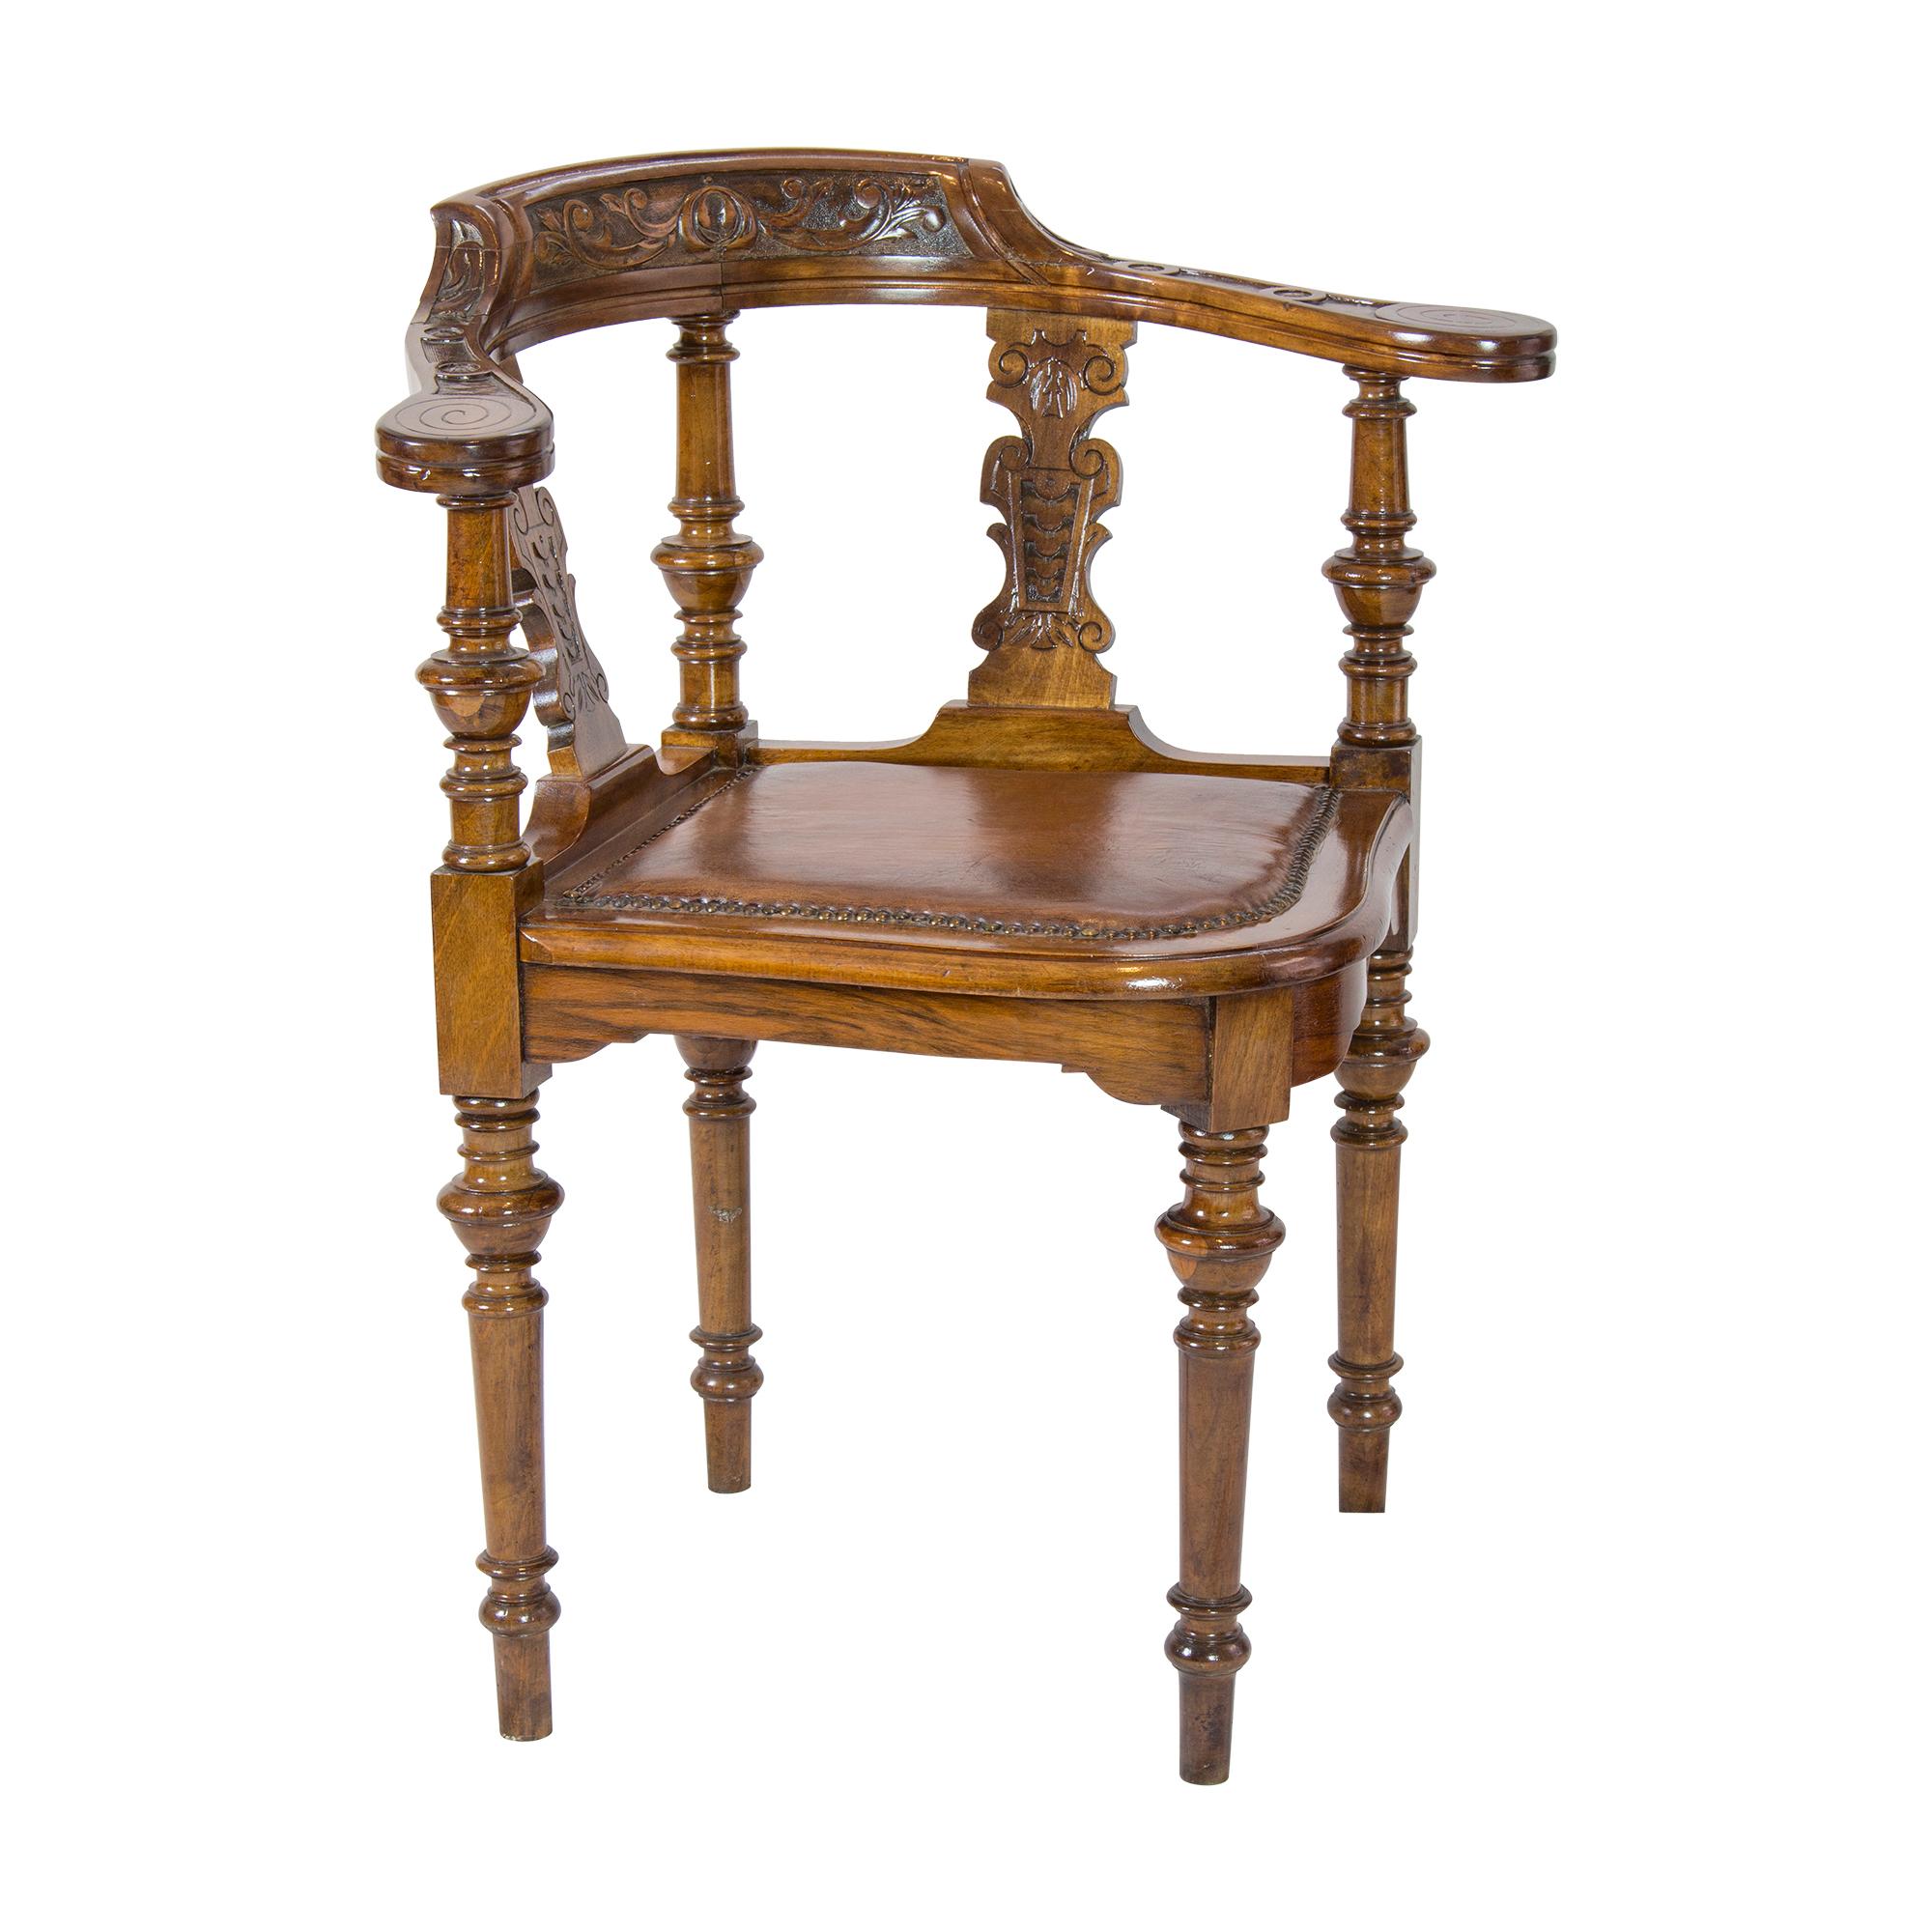 Sehr schöner seltener Eckstuhl, auf dem man bequem sitzen kann. Der Eckstuhl stammt aus der Zeit um 1870 in Deutschland, aus der Wilhelminischen Zeit. Der Stuhl wurde aus massivem Nussbaumholz gefertigt. Der Sitz wurde neu mit Schafsleder bezogen,